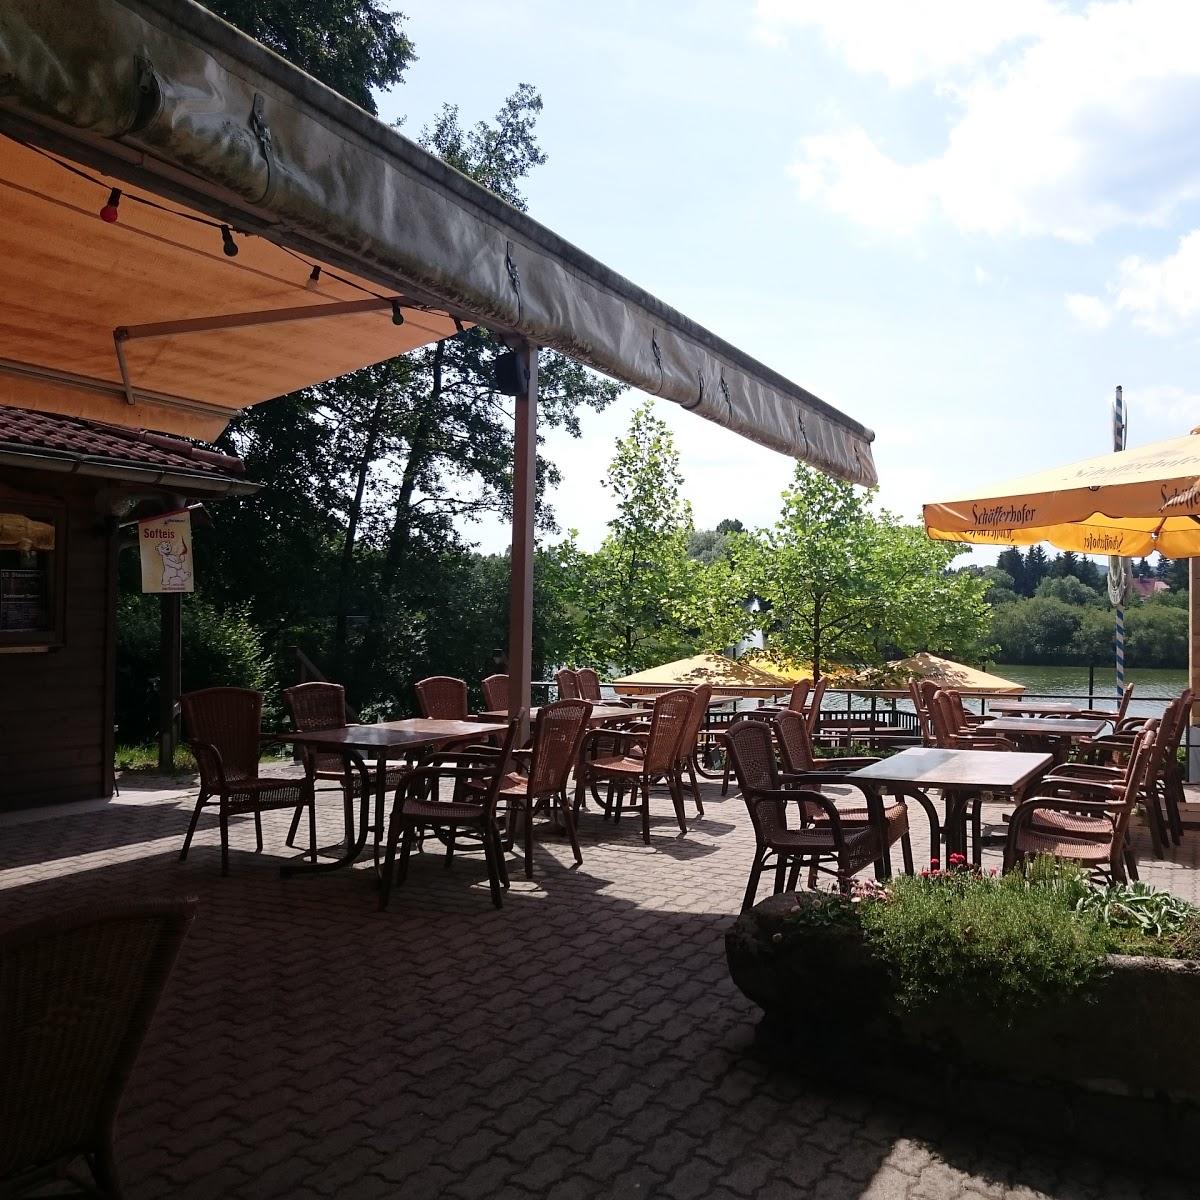 Restaurant "Biergarten am See" in Sohland an der Spree